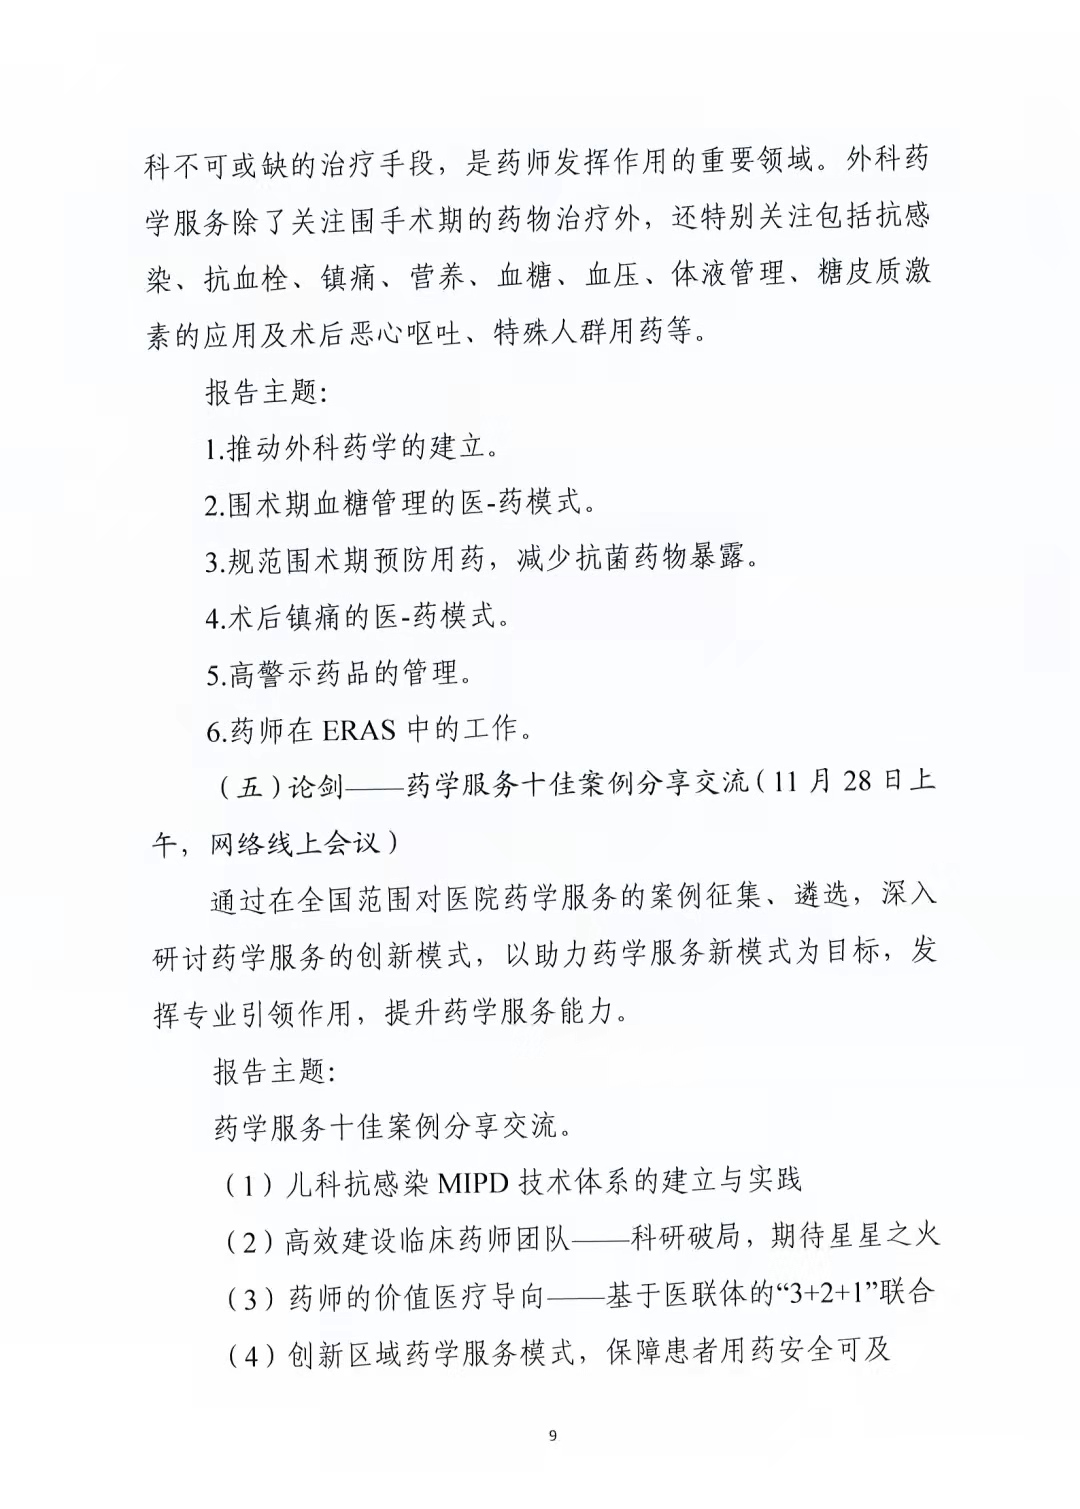 关于举办中国药学会第二十一届中国药师周的通知（第二轮）(图9)